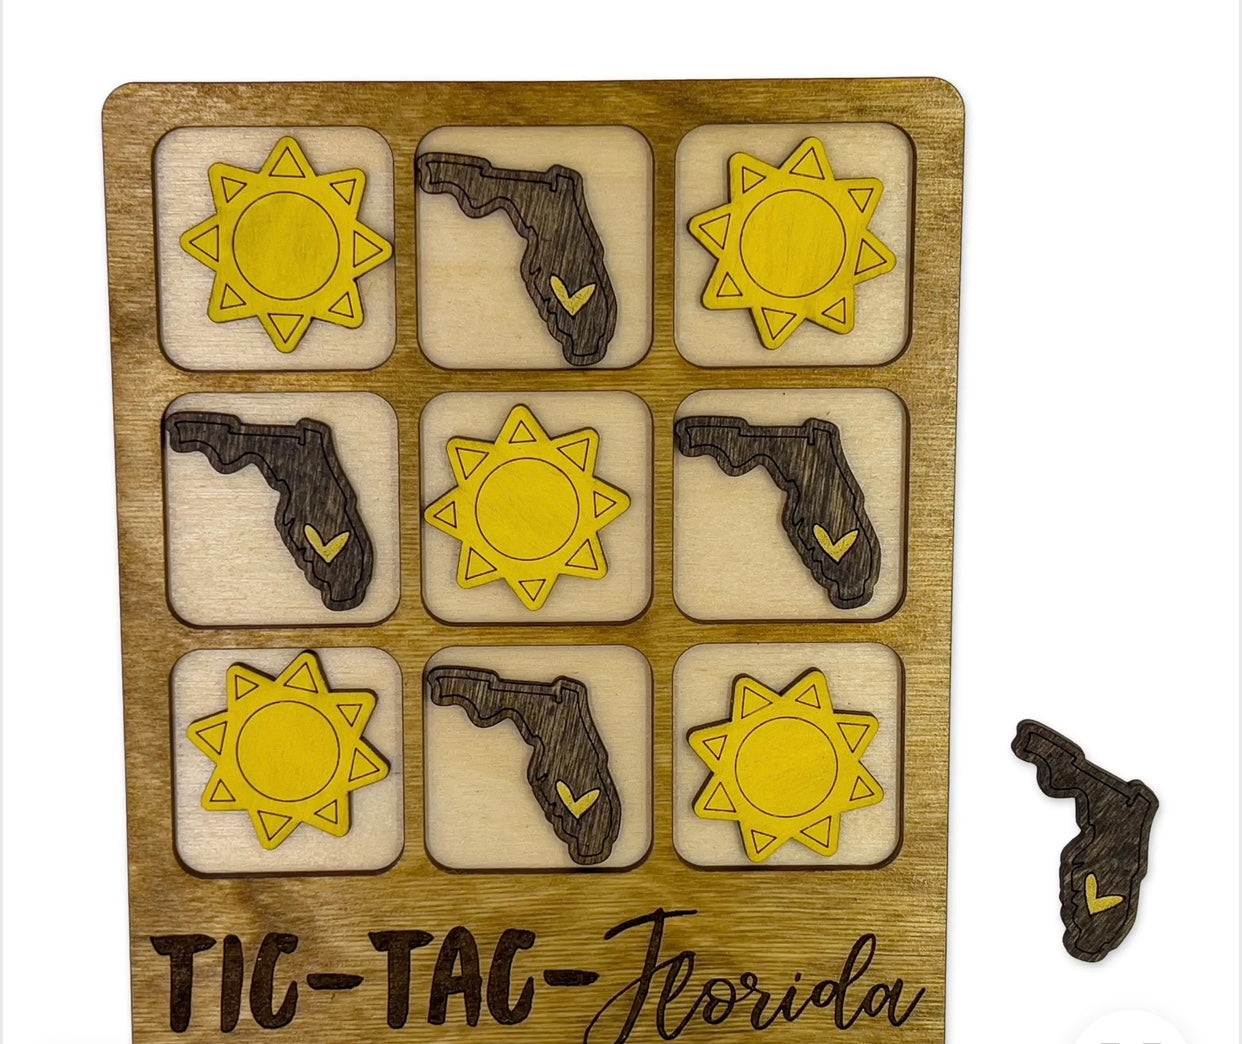 Tic-Tac-Florida